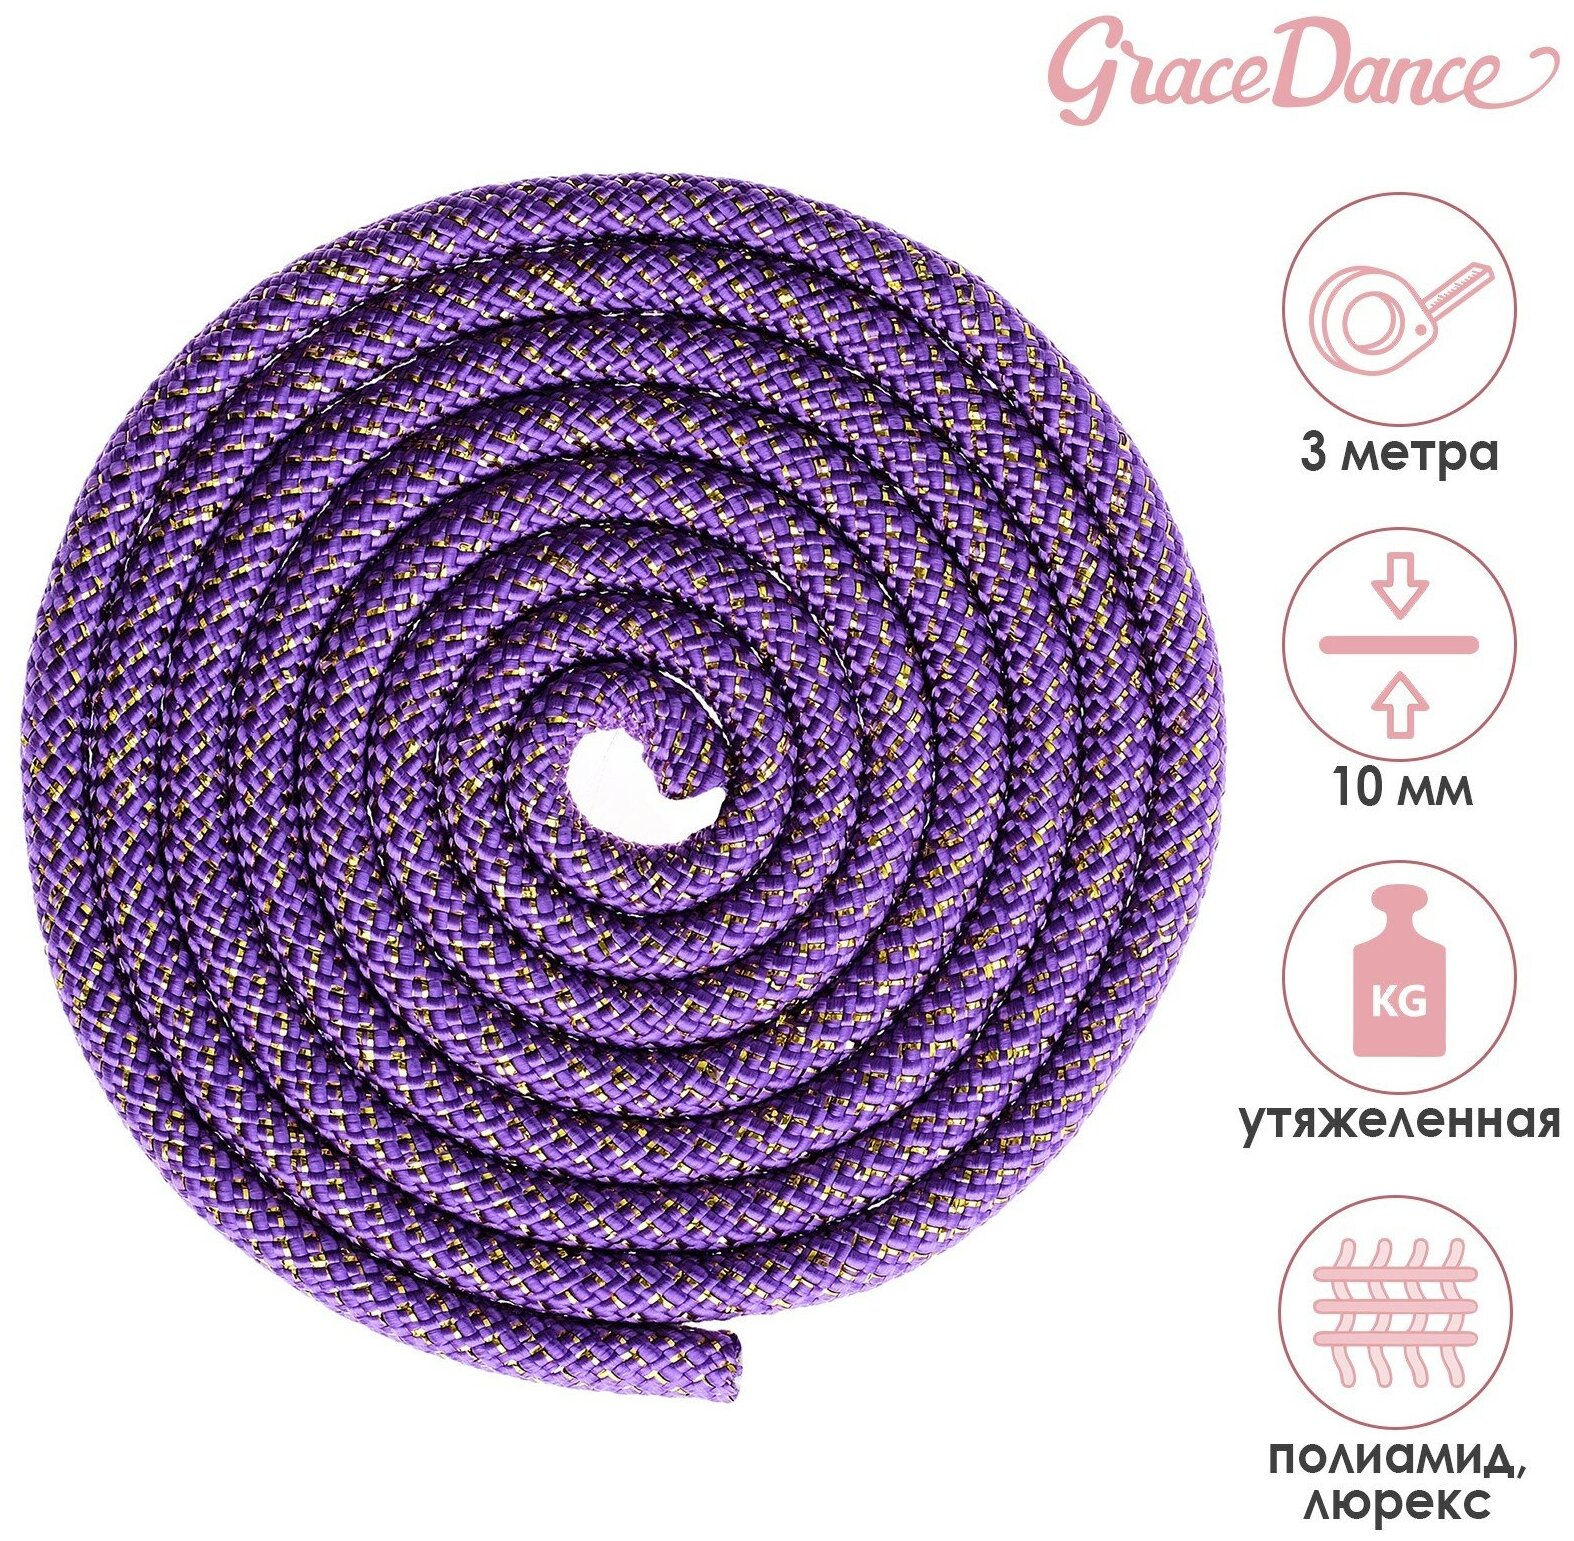 Скакалка Grace Dance, гимнастическая утяжелённая, 3 м, 180 г, цвет фиолетовый, золото, люрекс